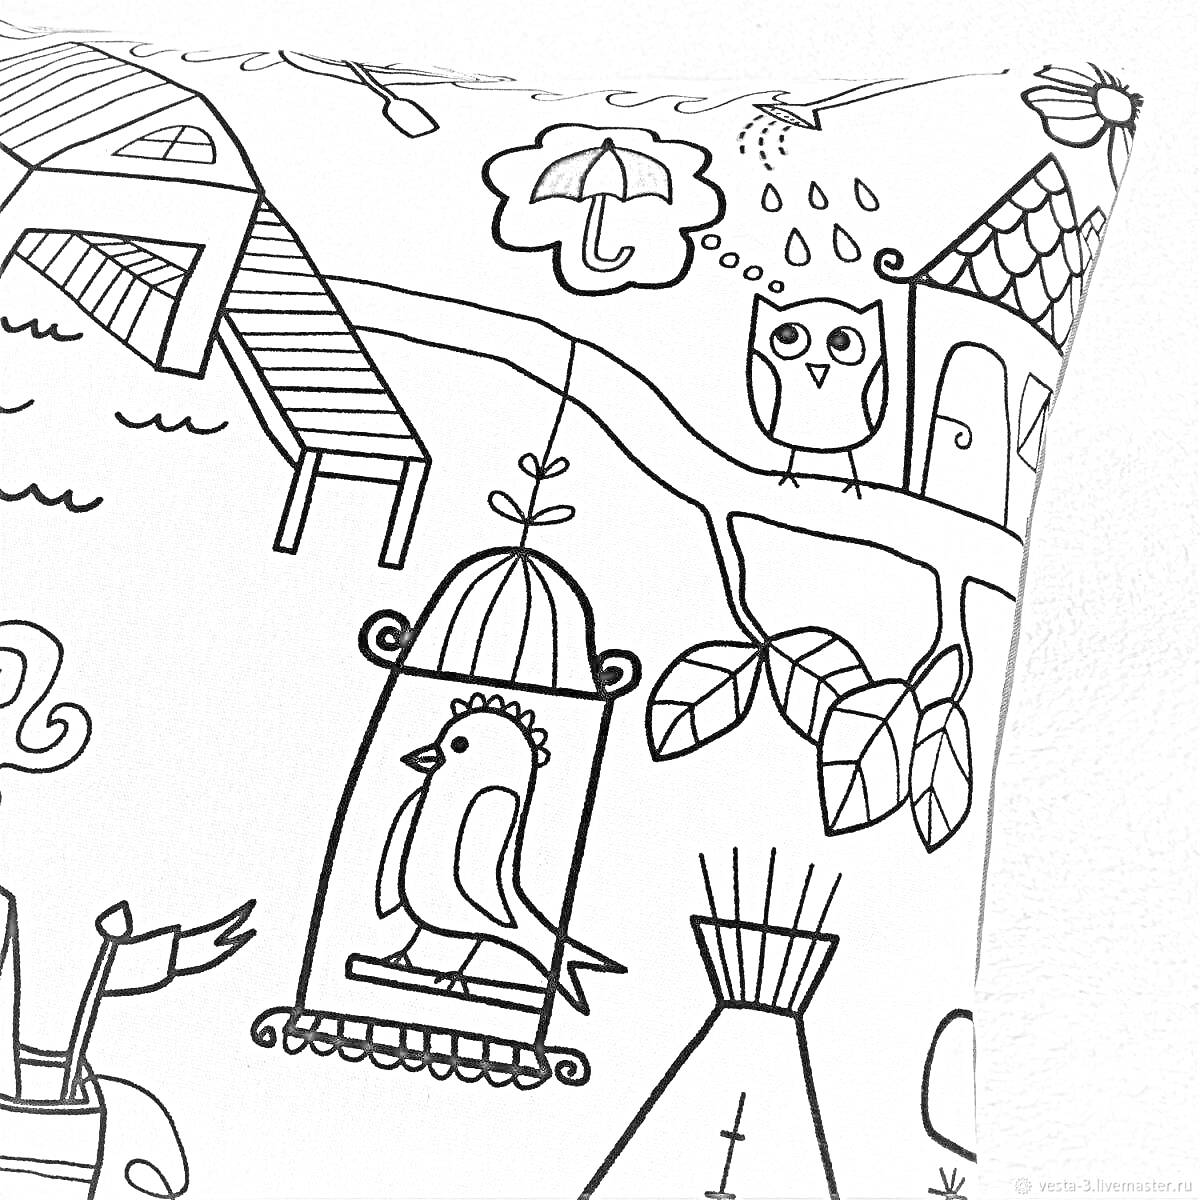 Раскраска Наволочка с рисунками: сова с зонтом на ветке, птица в клетке, дом с крышей и лестницей, растение с большими листьями, кисточка###